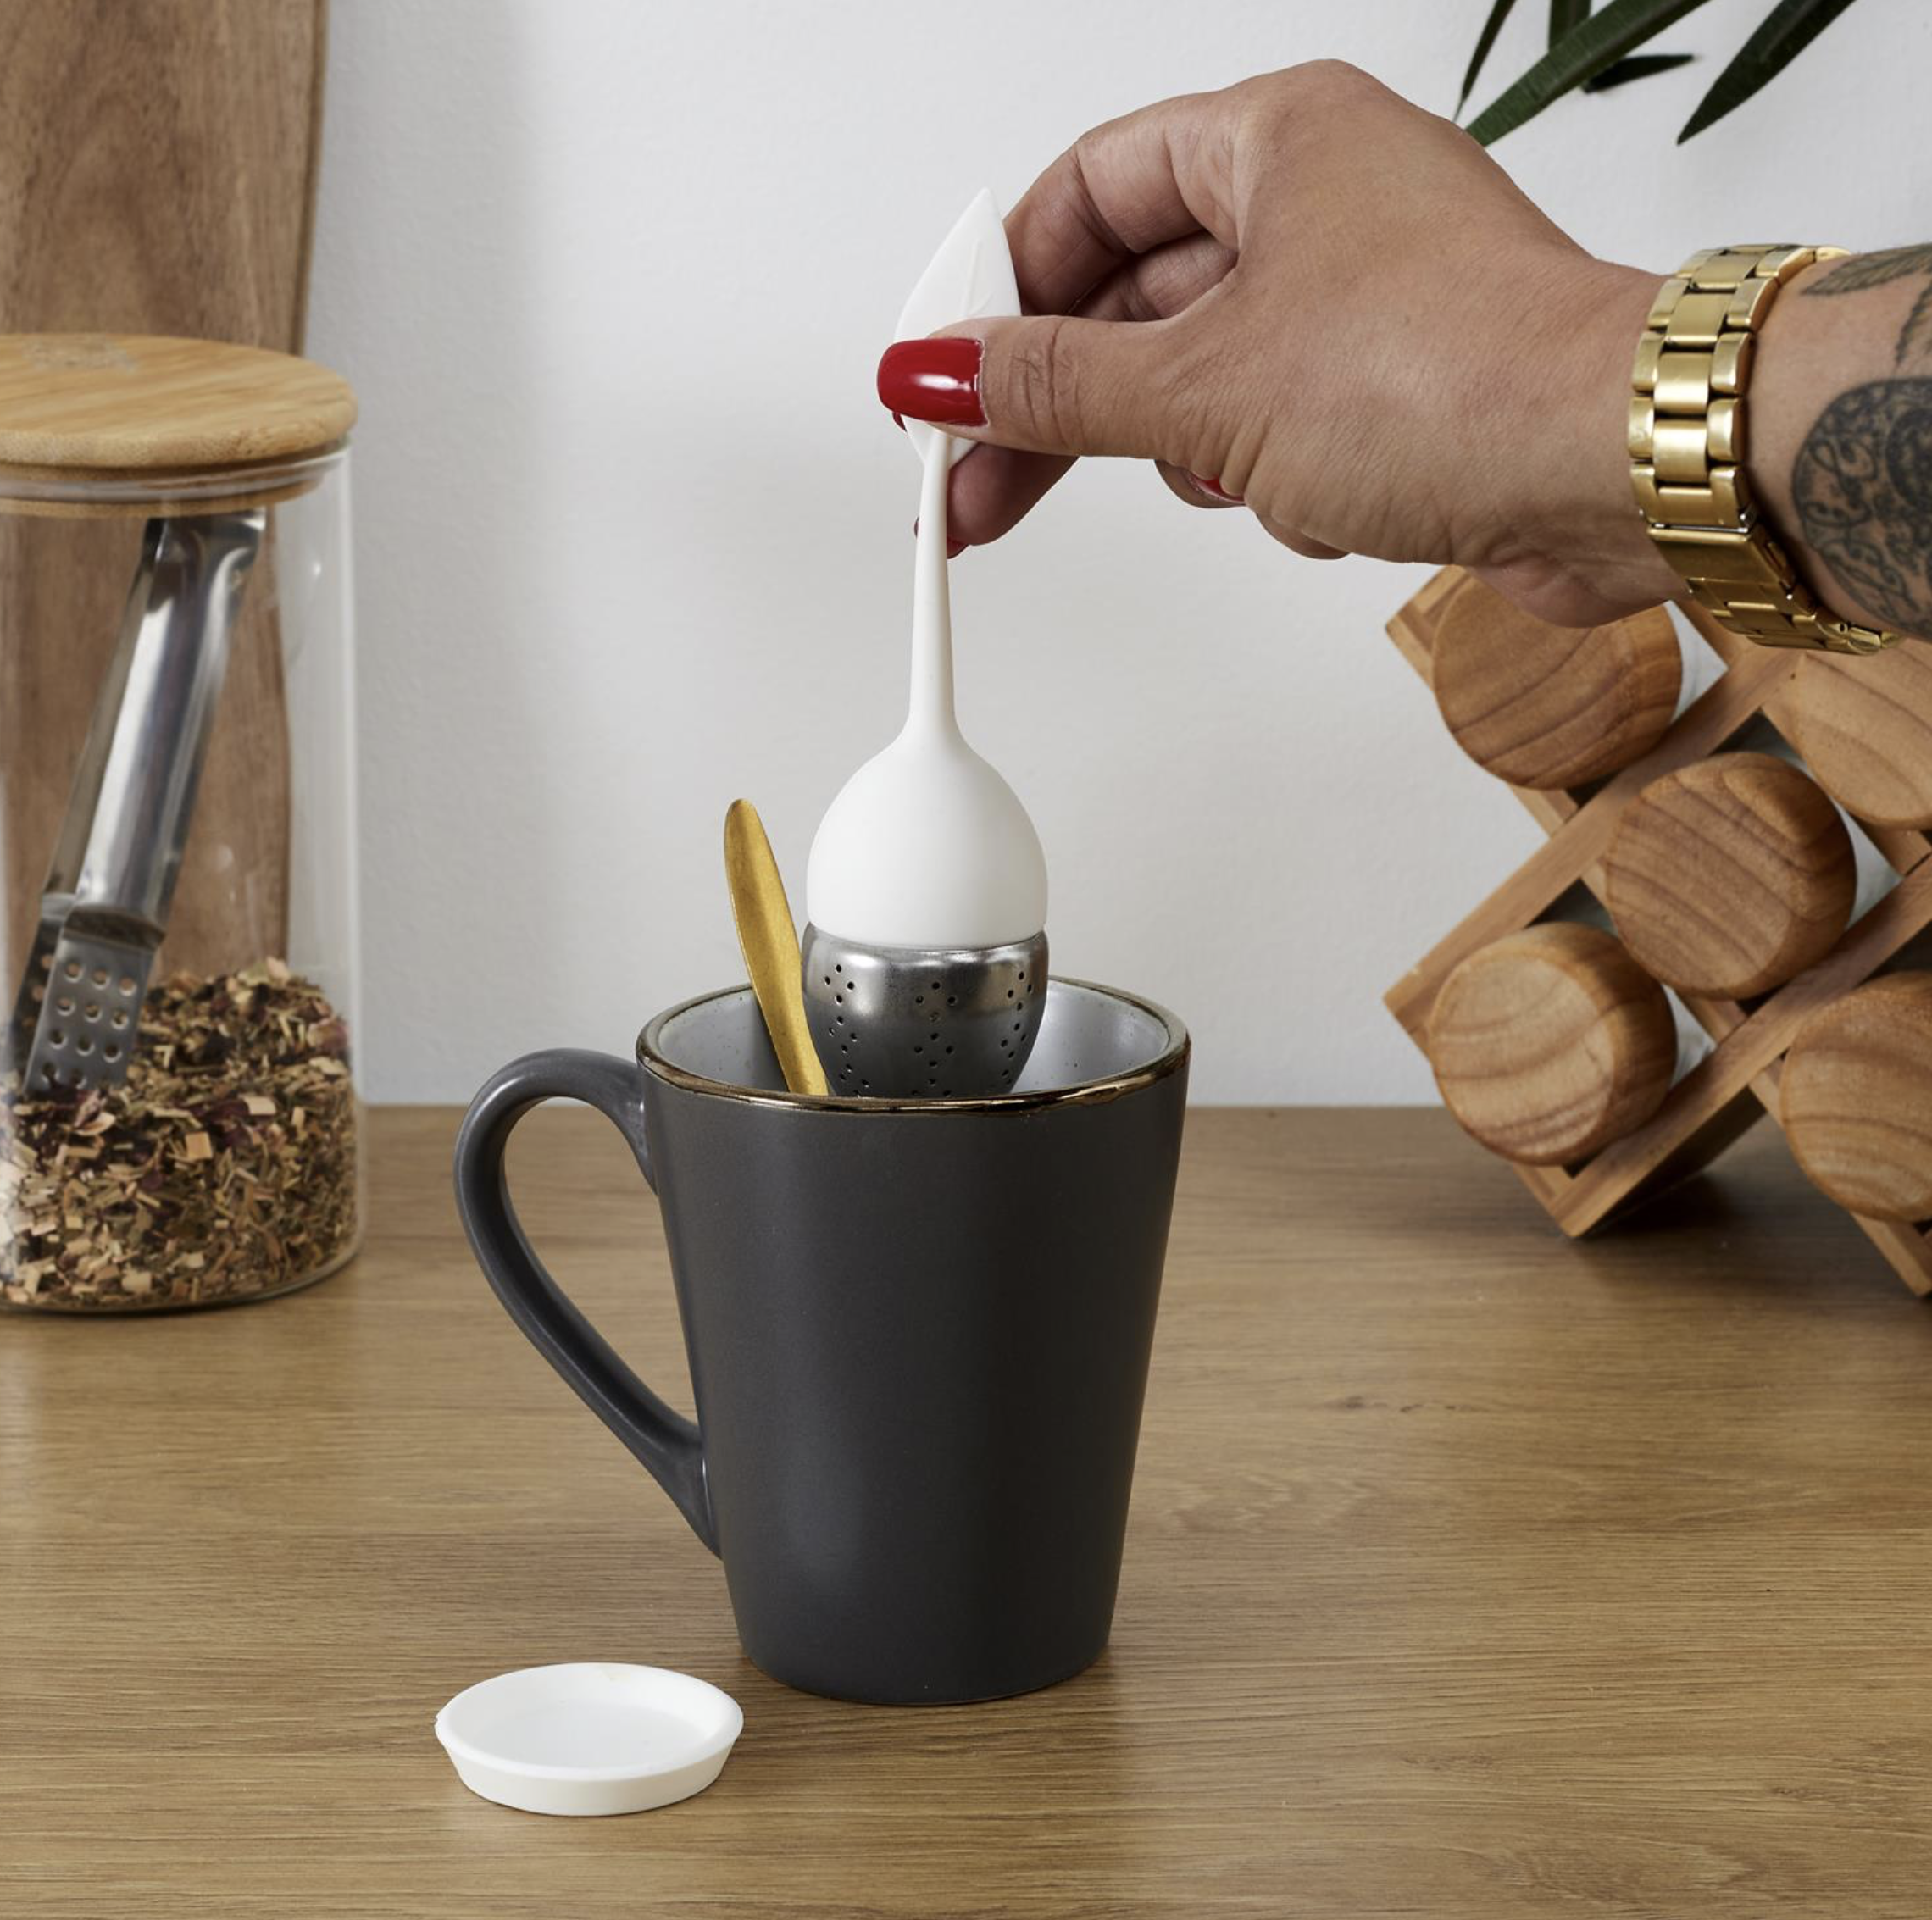 Boule à thé silicone - Infusez votre thé en toute simplicité - ATEAPIK